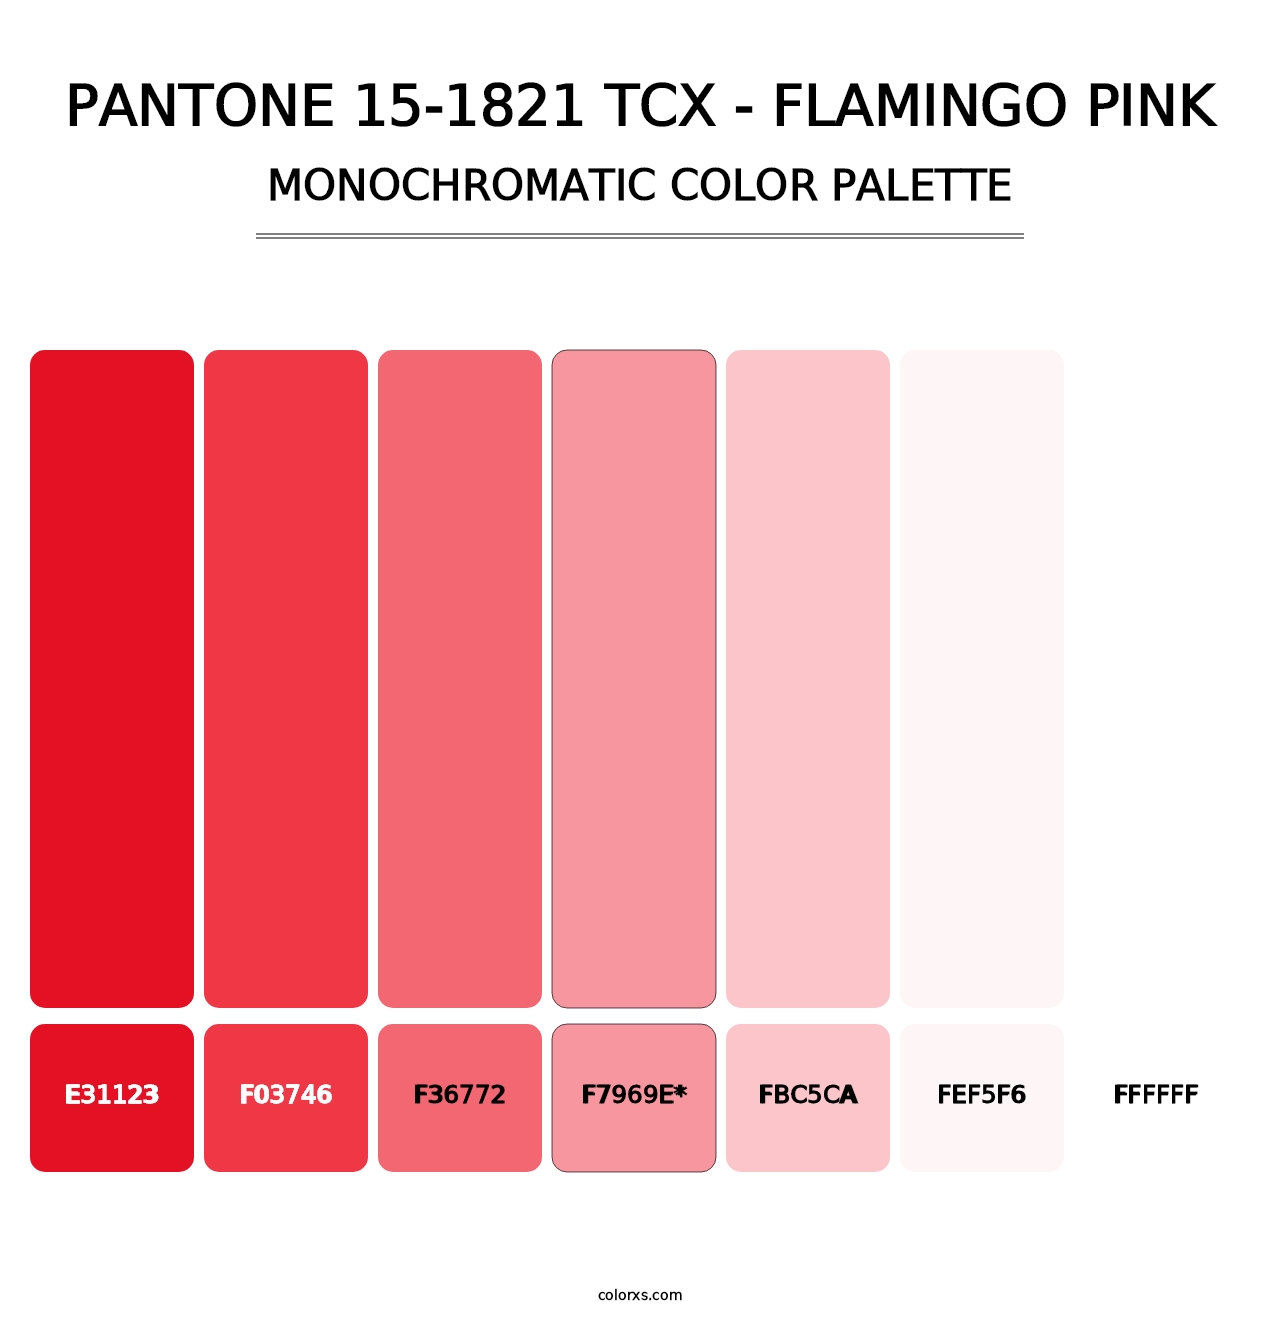 PANTONE 15-1821 TCX - Flamingo Pink - Monochromatic Color Palette